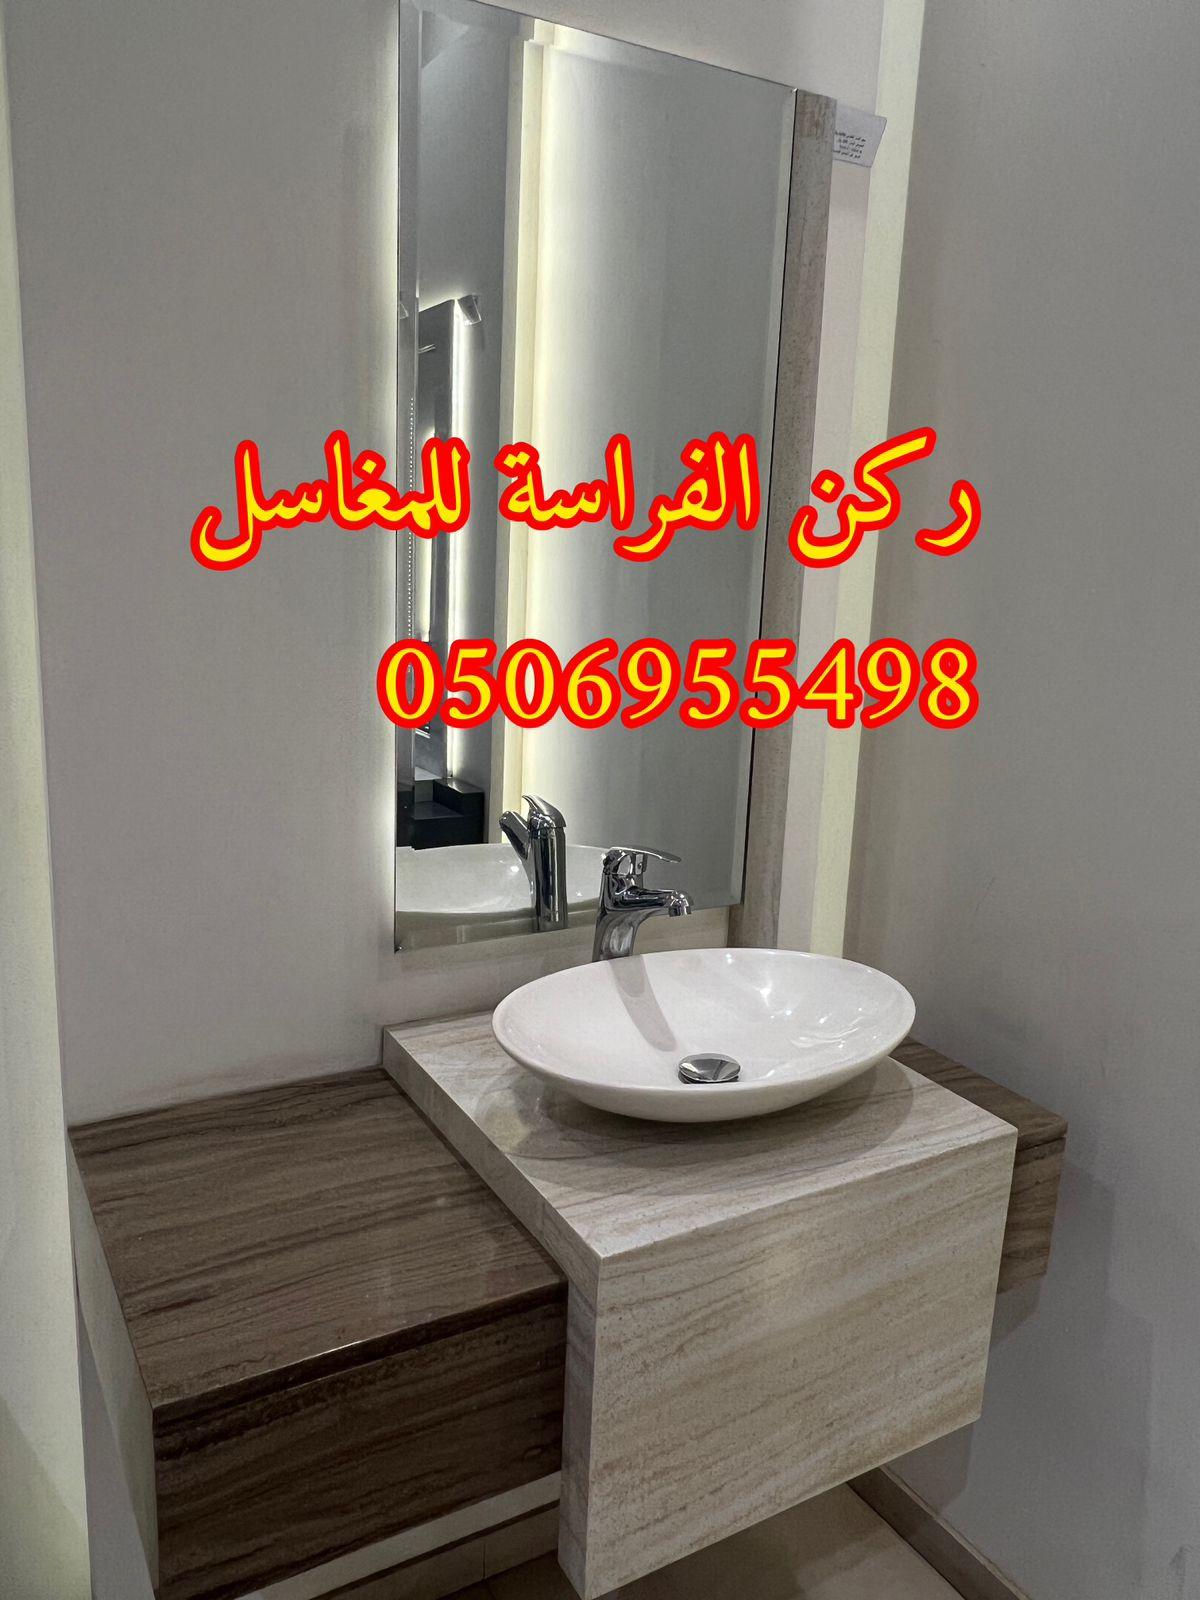 الرياض - تفصيل احواض مغاسل رخام في الرياض,0506955498 868453005